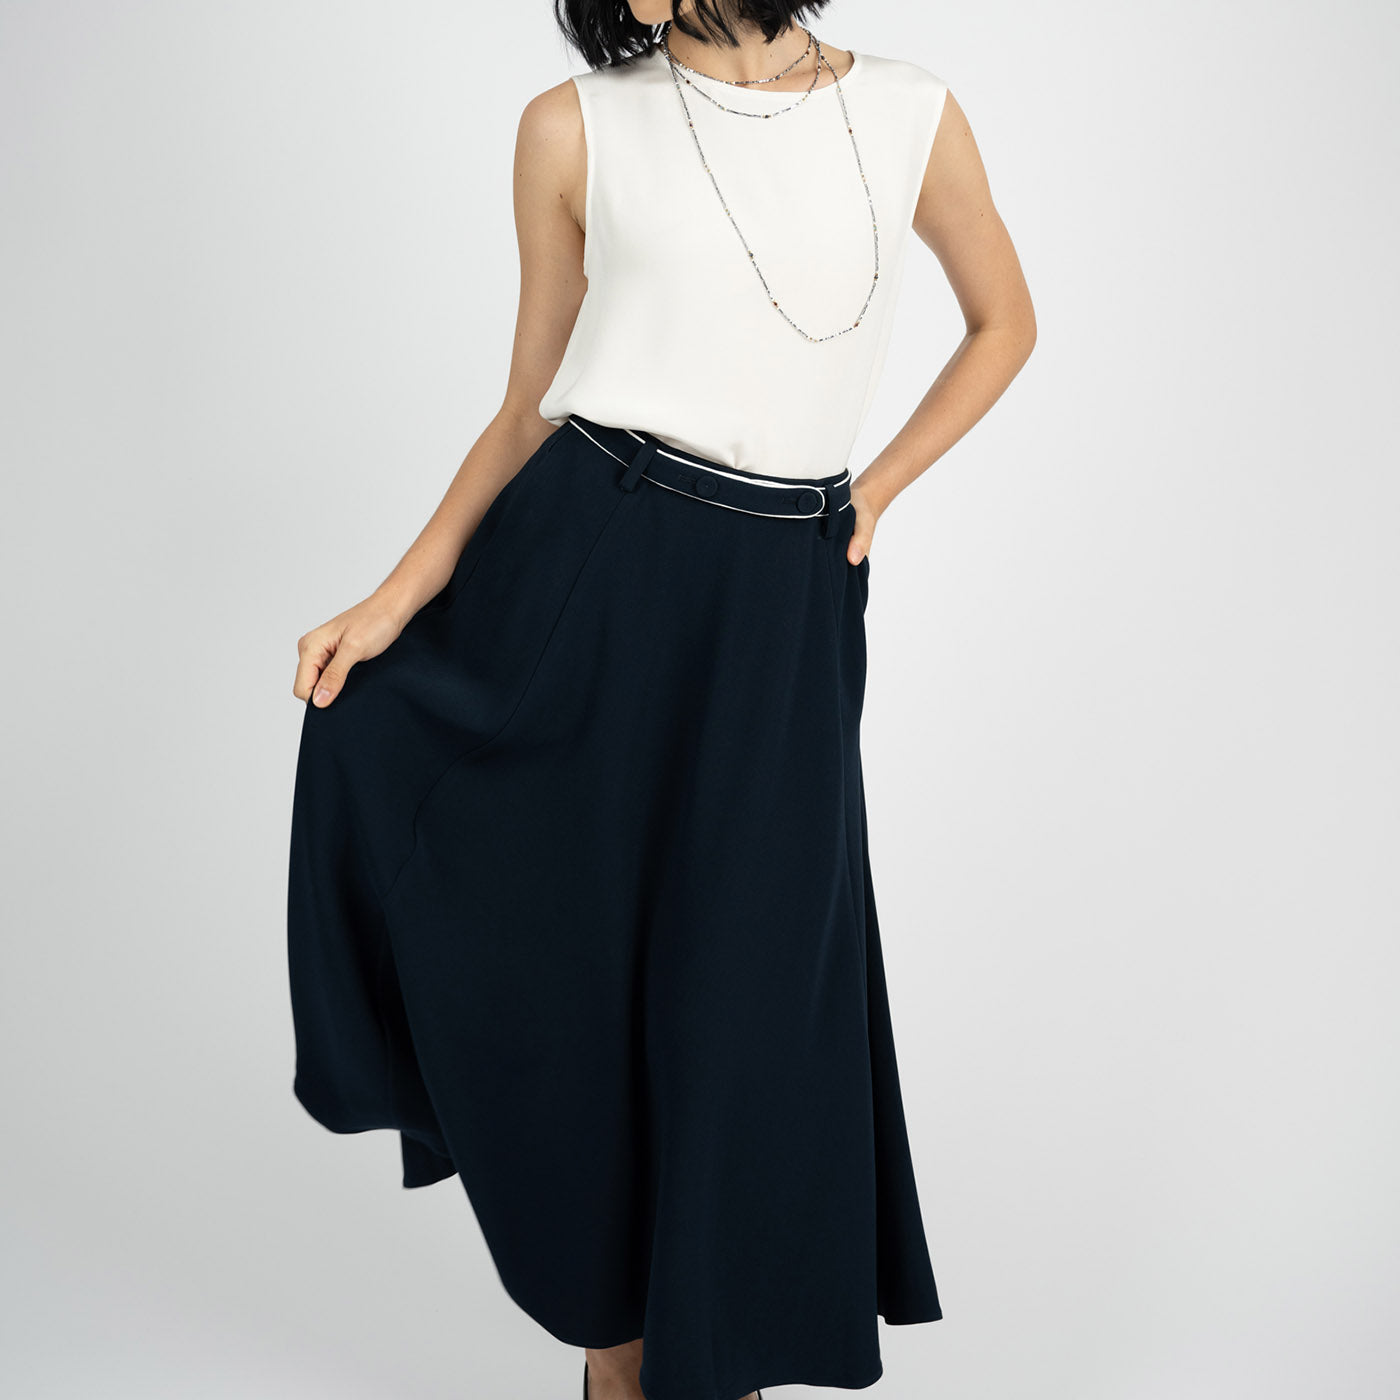 Lauren Acetate Midi Skirt - Gosia Orlowska Online Shop